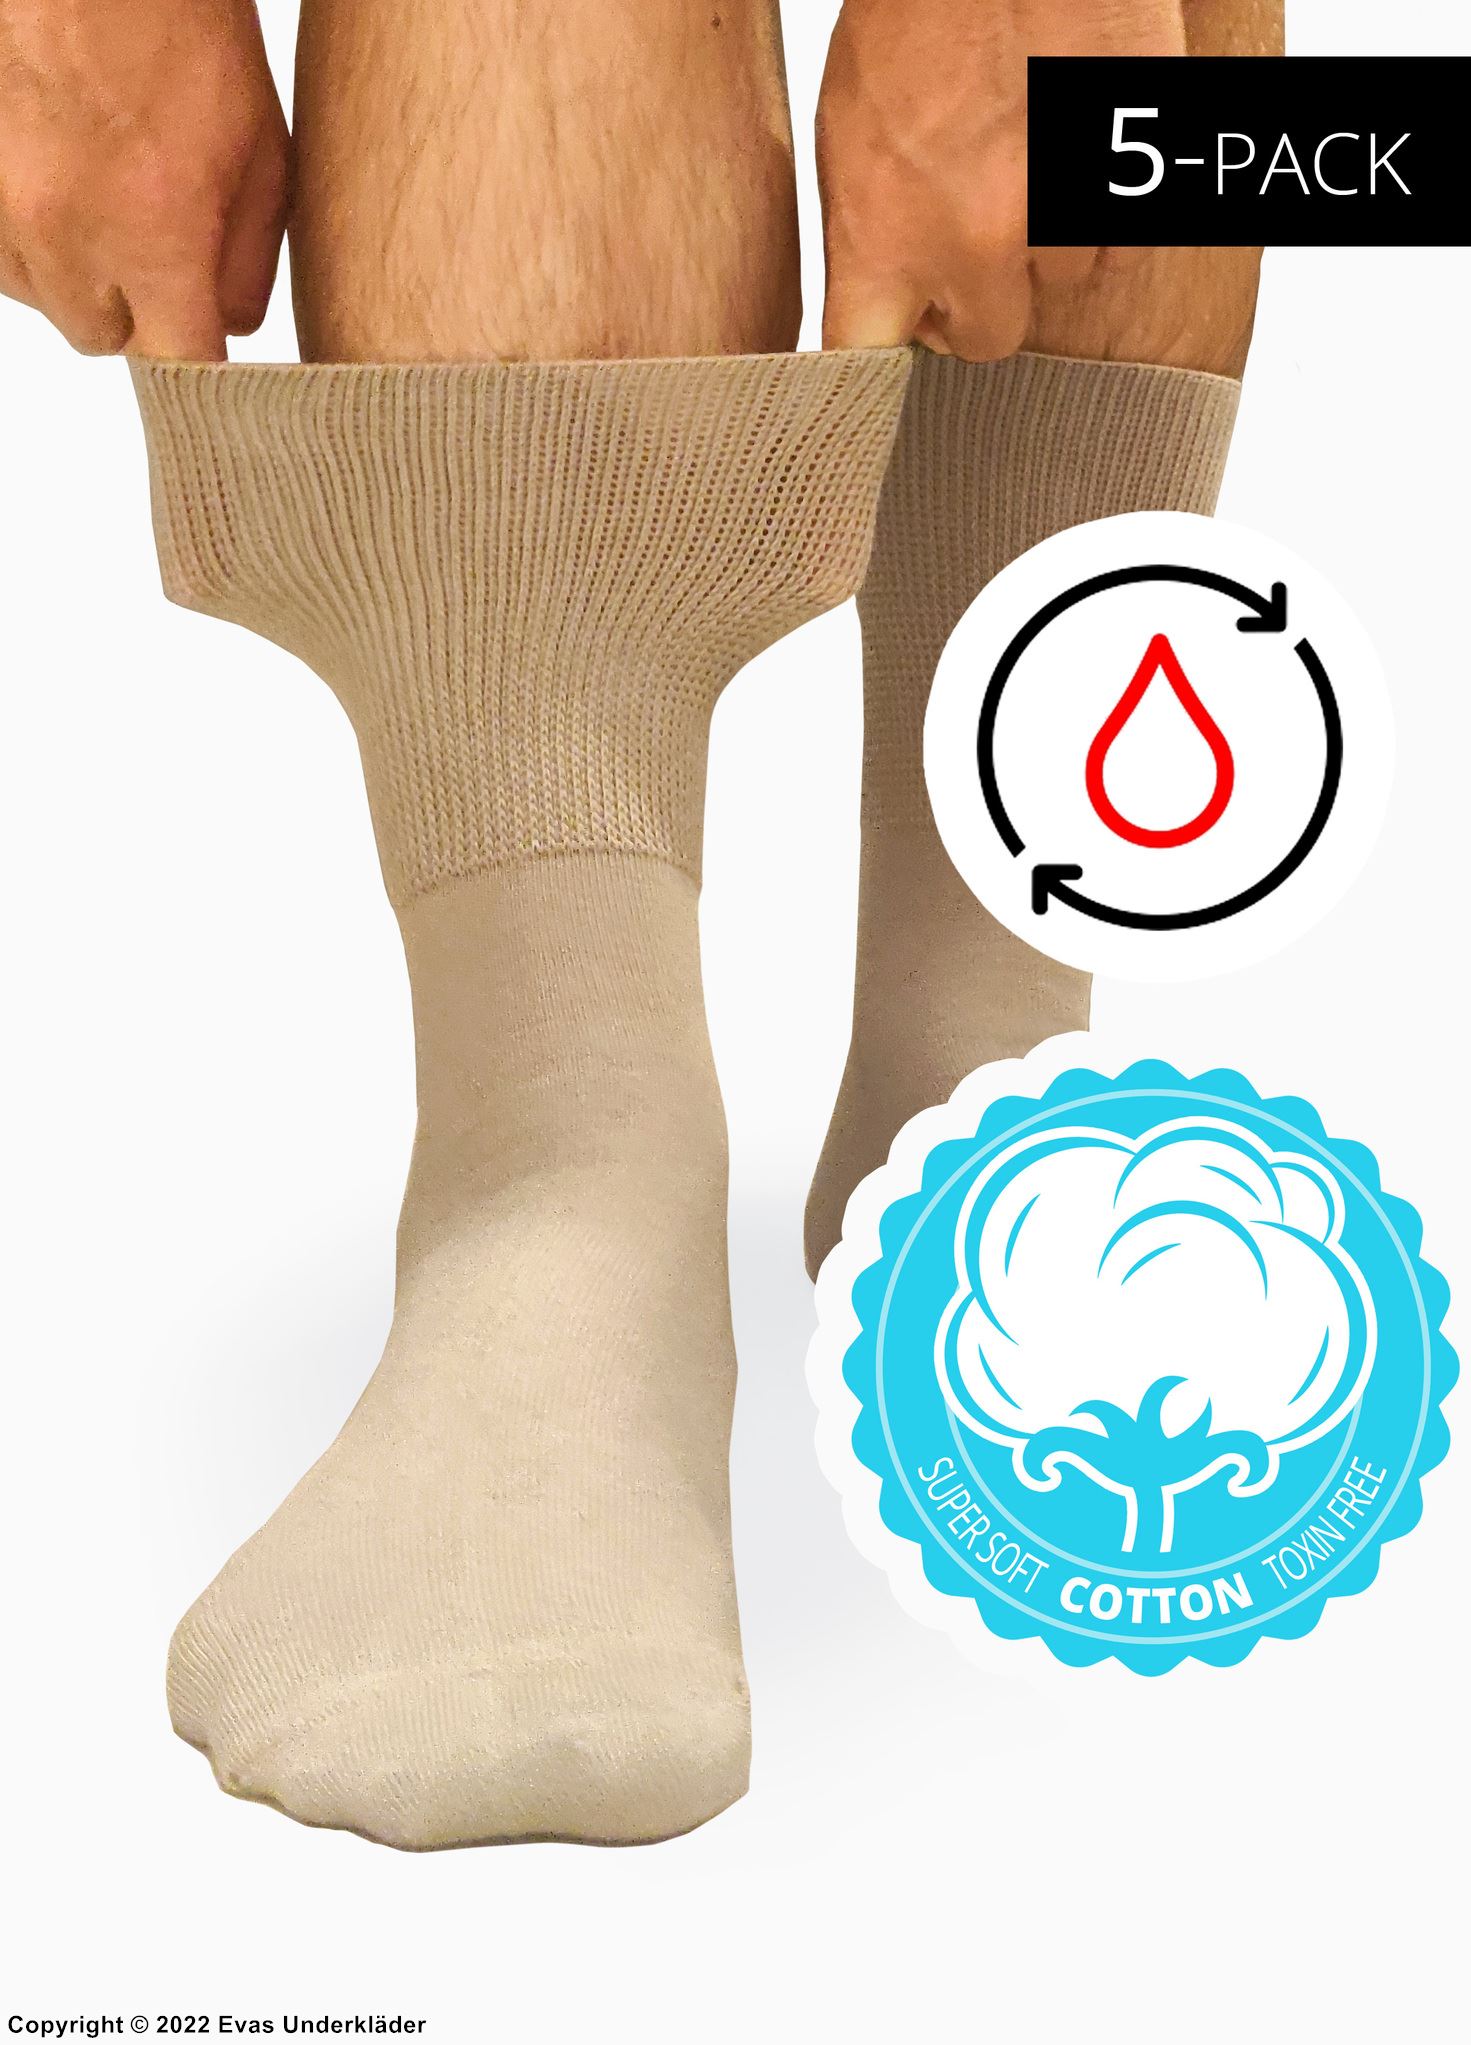 Comfort socks (unisex), cotton, gentle cuffs, 5-pack